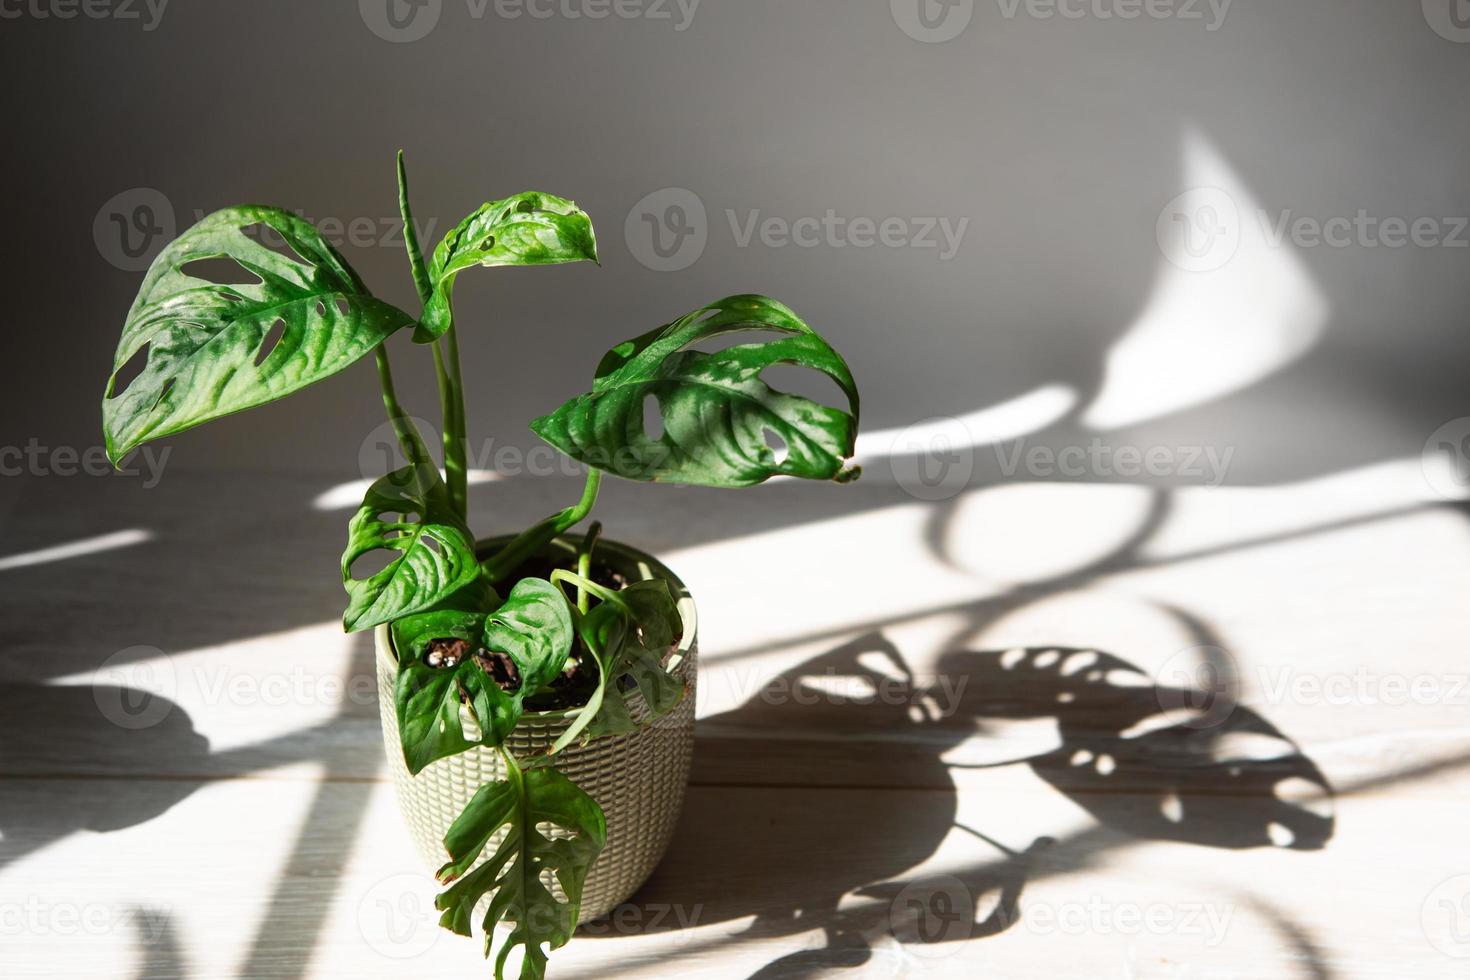 masque de singe monstera obliqua feuille en gros plan sur le rebord de la fenêtre en plein soleil avec des ombres. plantes d'intérieur en pot, décoration verte, soins et culture photo